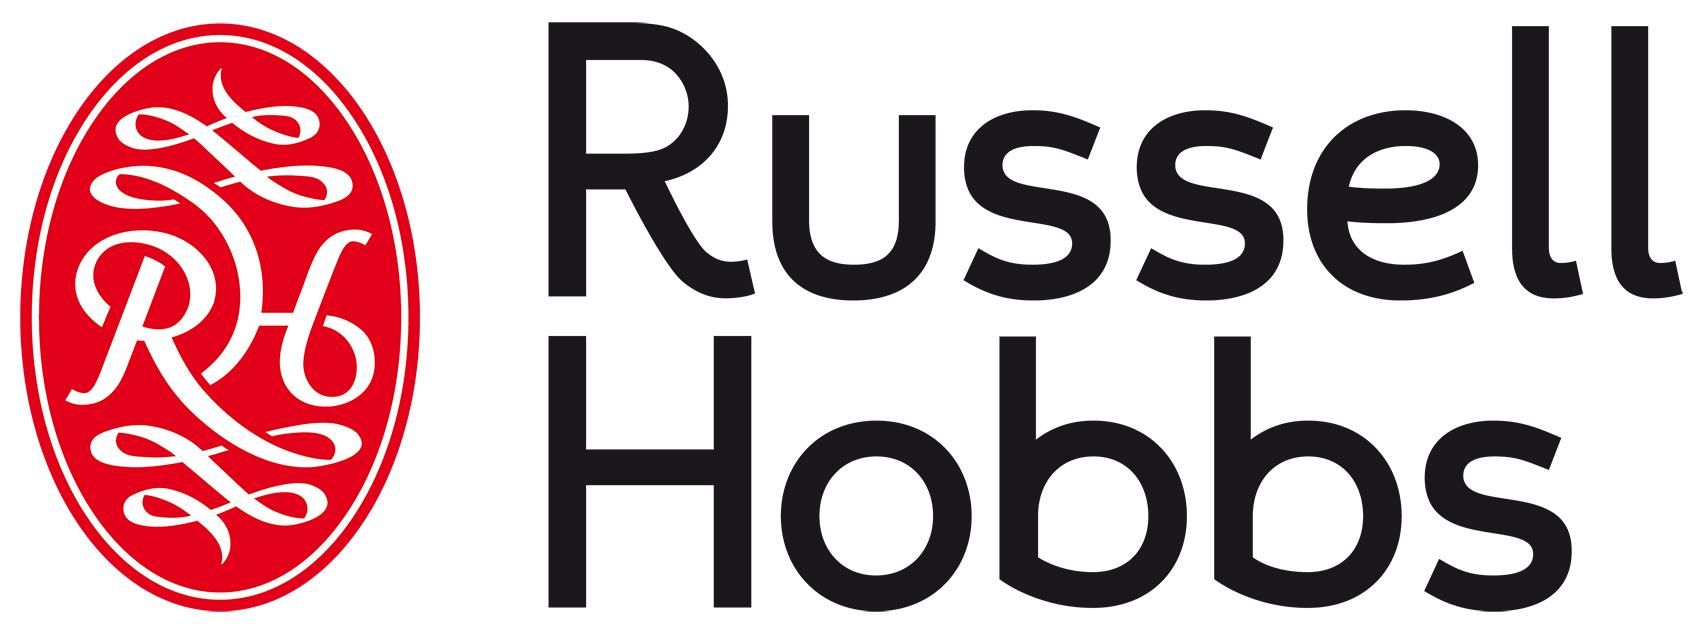 Russell Hobbs 20630-56 Ultra